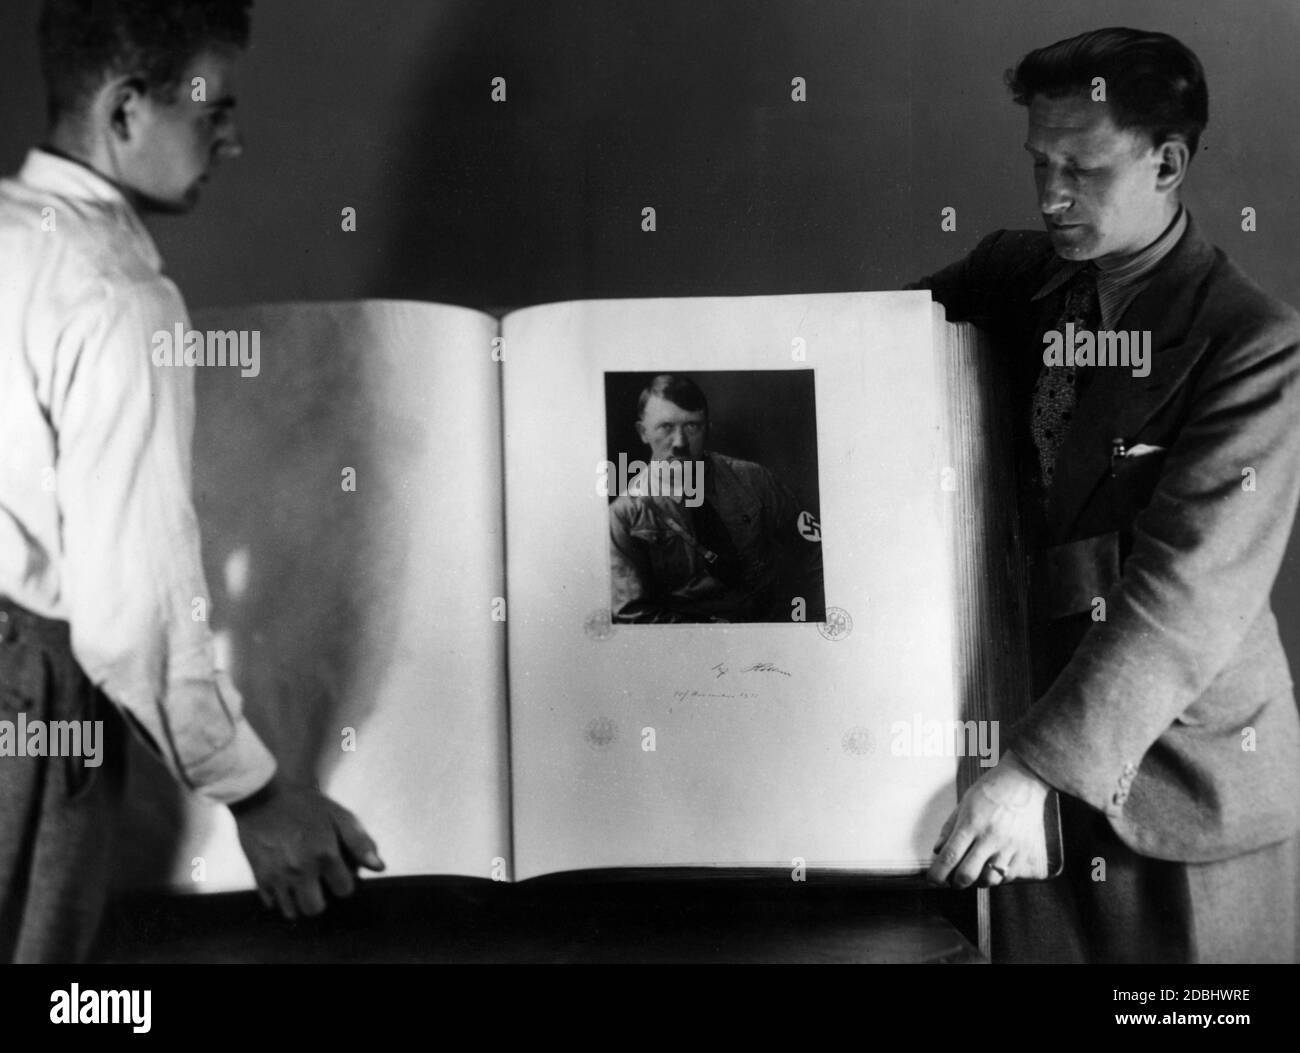 Das weltweit größte Manuskriptsammlungsalbum wurde 1936 auf der Berliner Handwerksmesse präsentiert. Es wog 60 kg und wurde von einem großen Porträt Adolf Hitlers mit seiner Unterschrift vorangestellt. Stockfoto